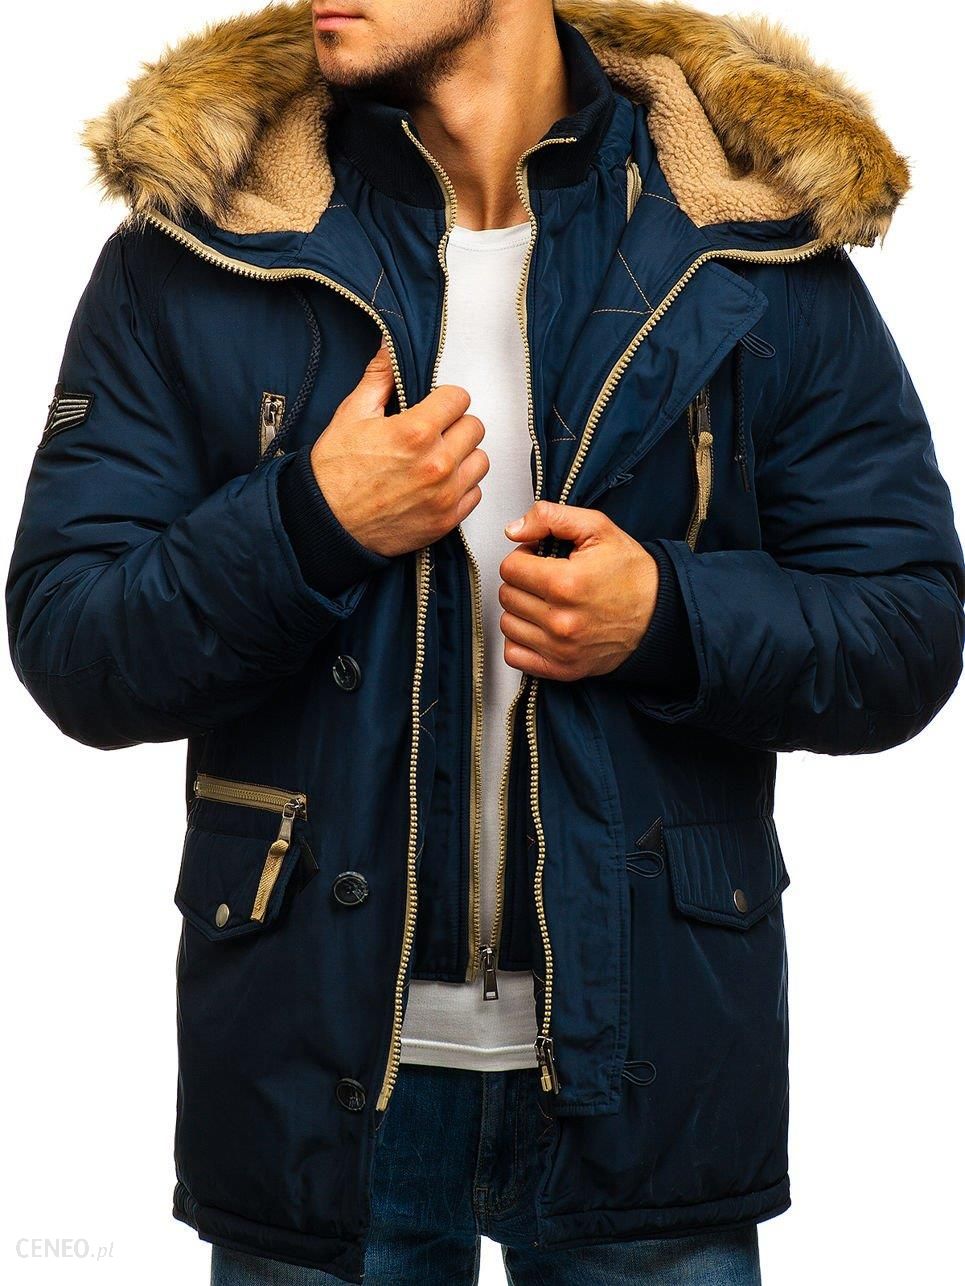 зимние куртки в москве